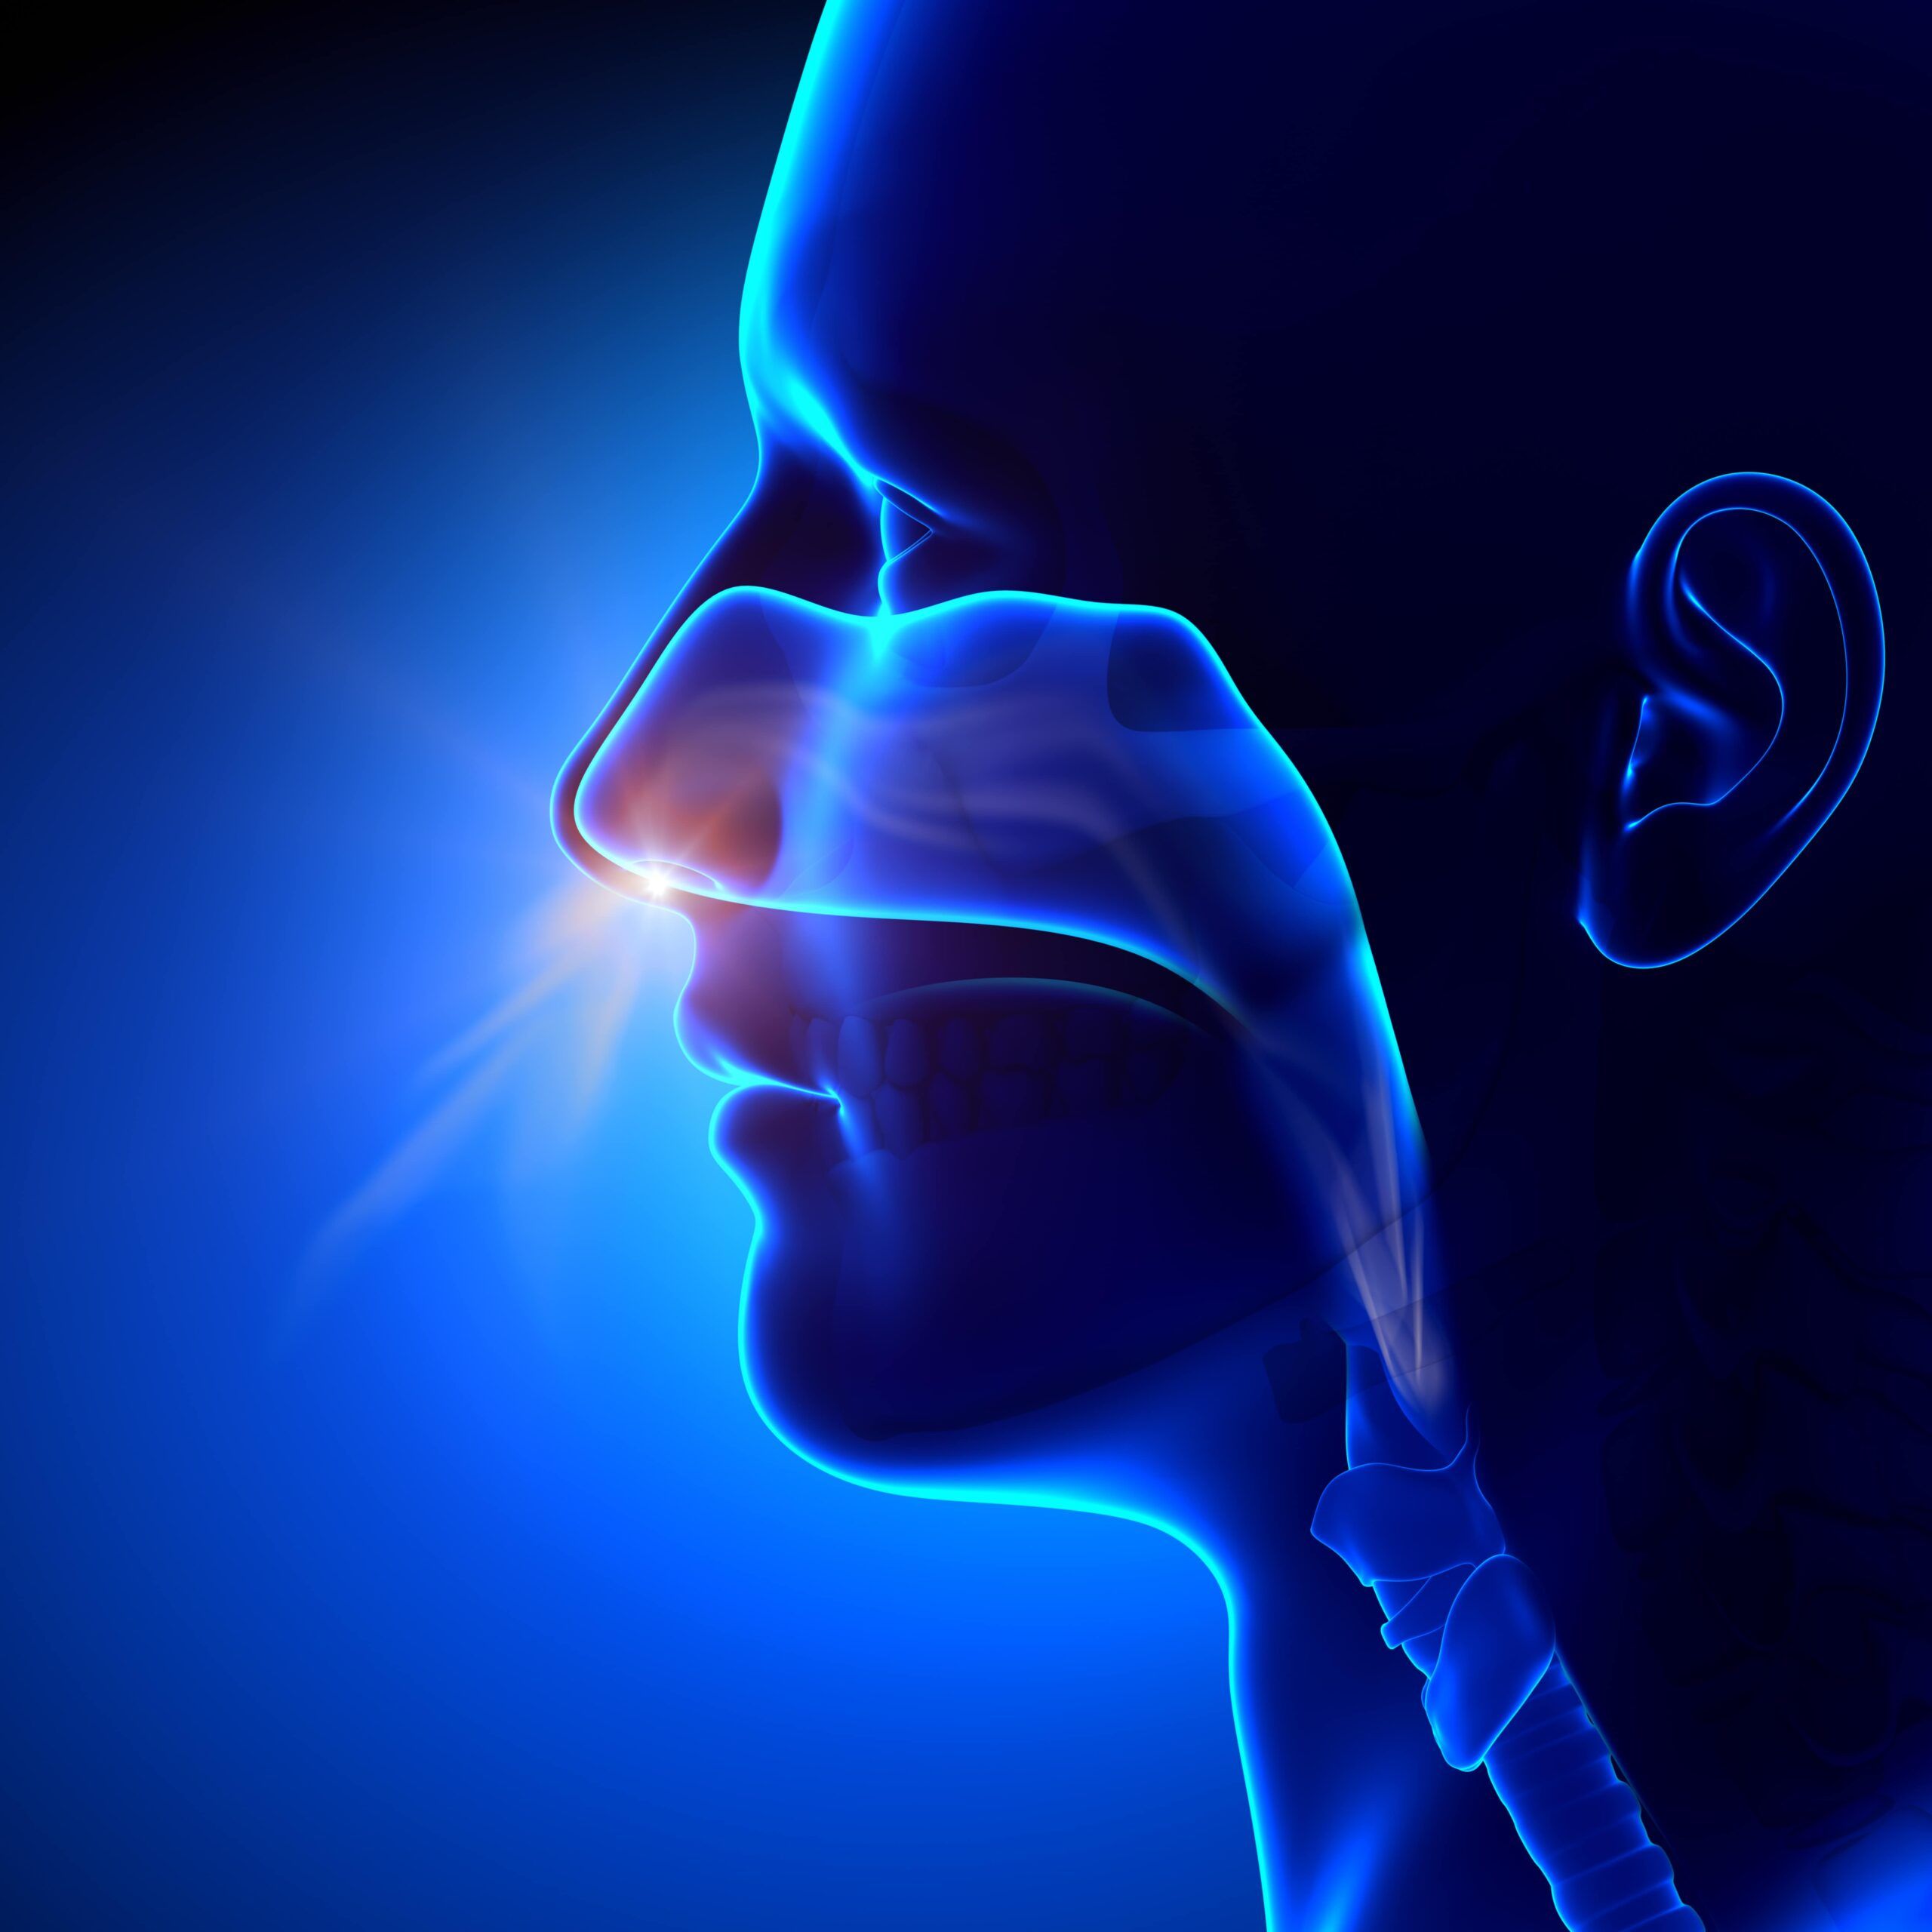 animation of nasal spray entering nose